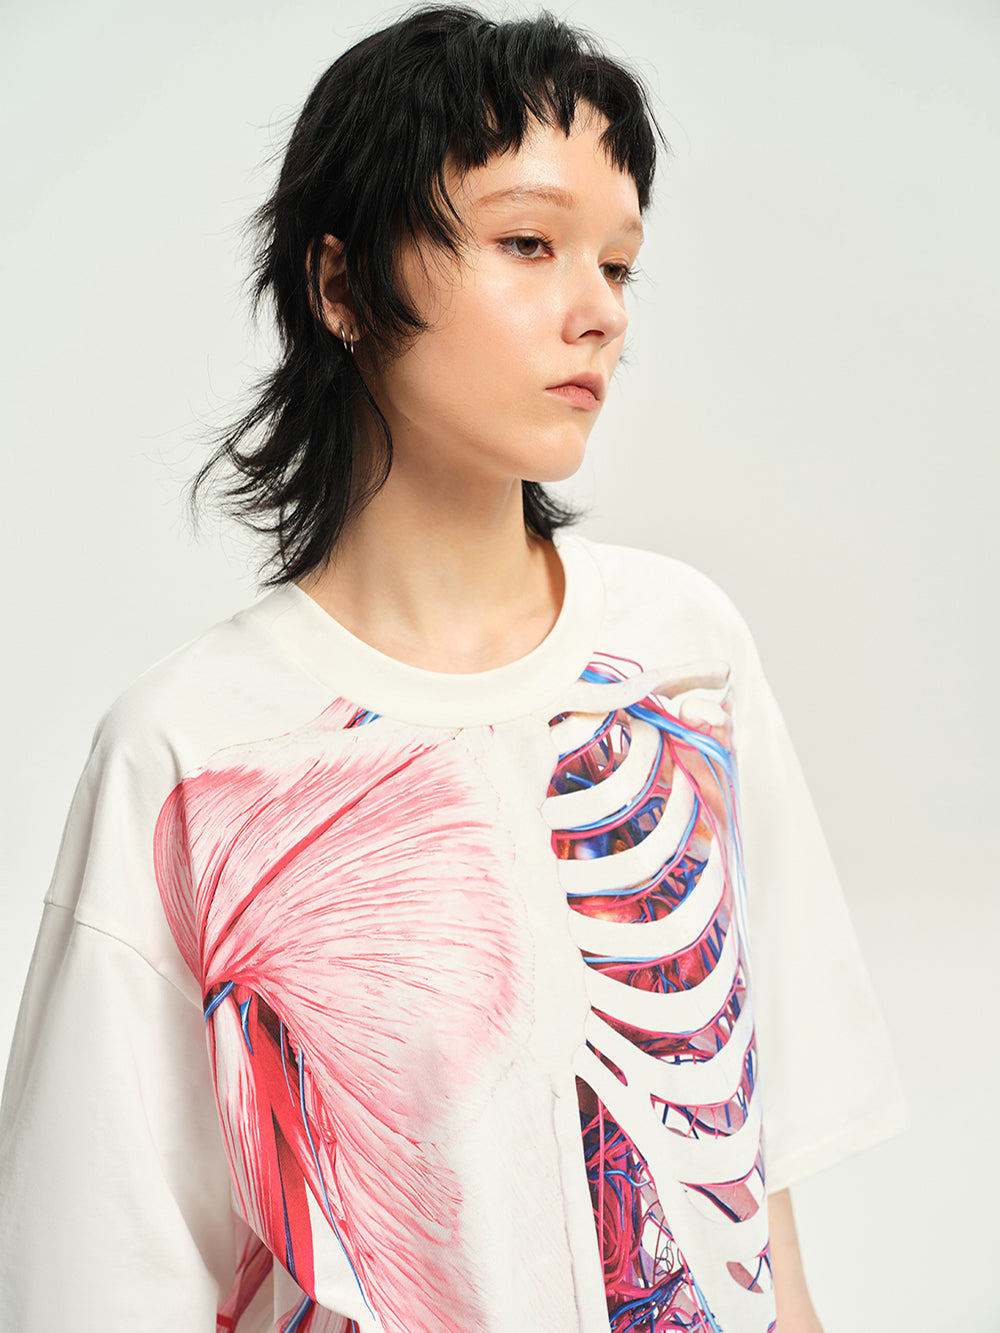 MUKTANK 23SS Human Skeleton Print T-shirts